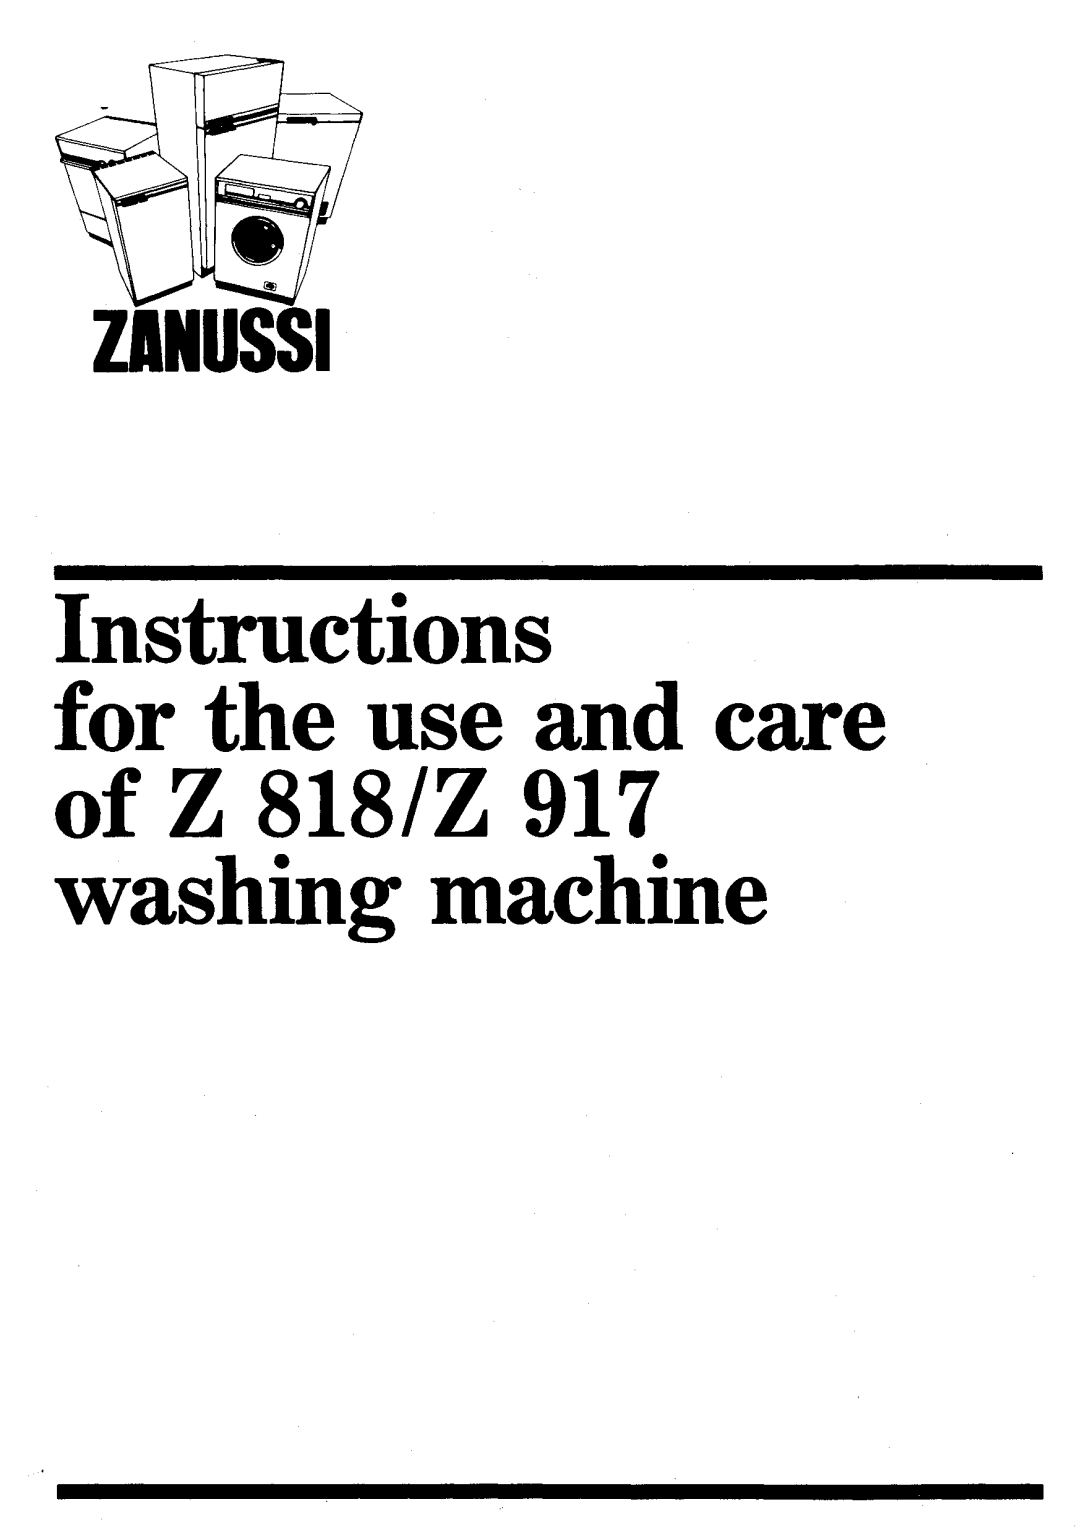 Zanussi Z 818, Z 917 manual 